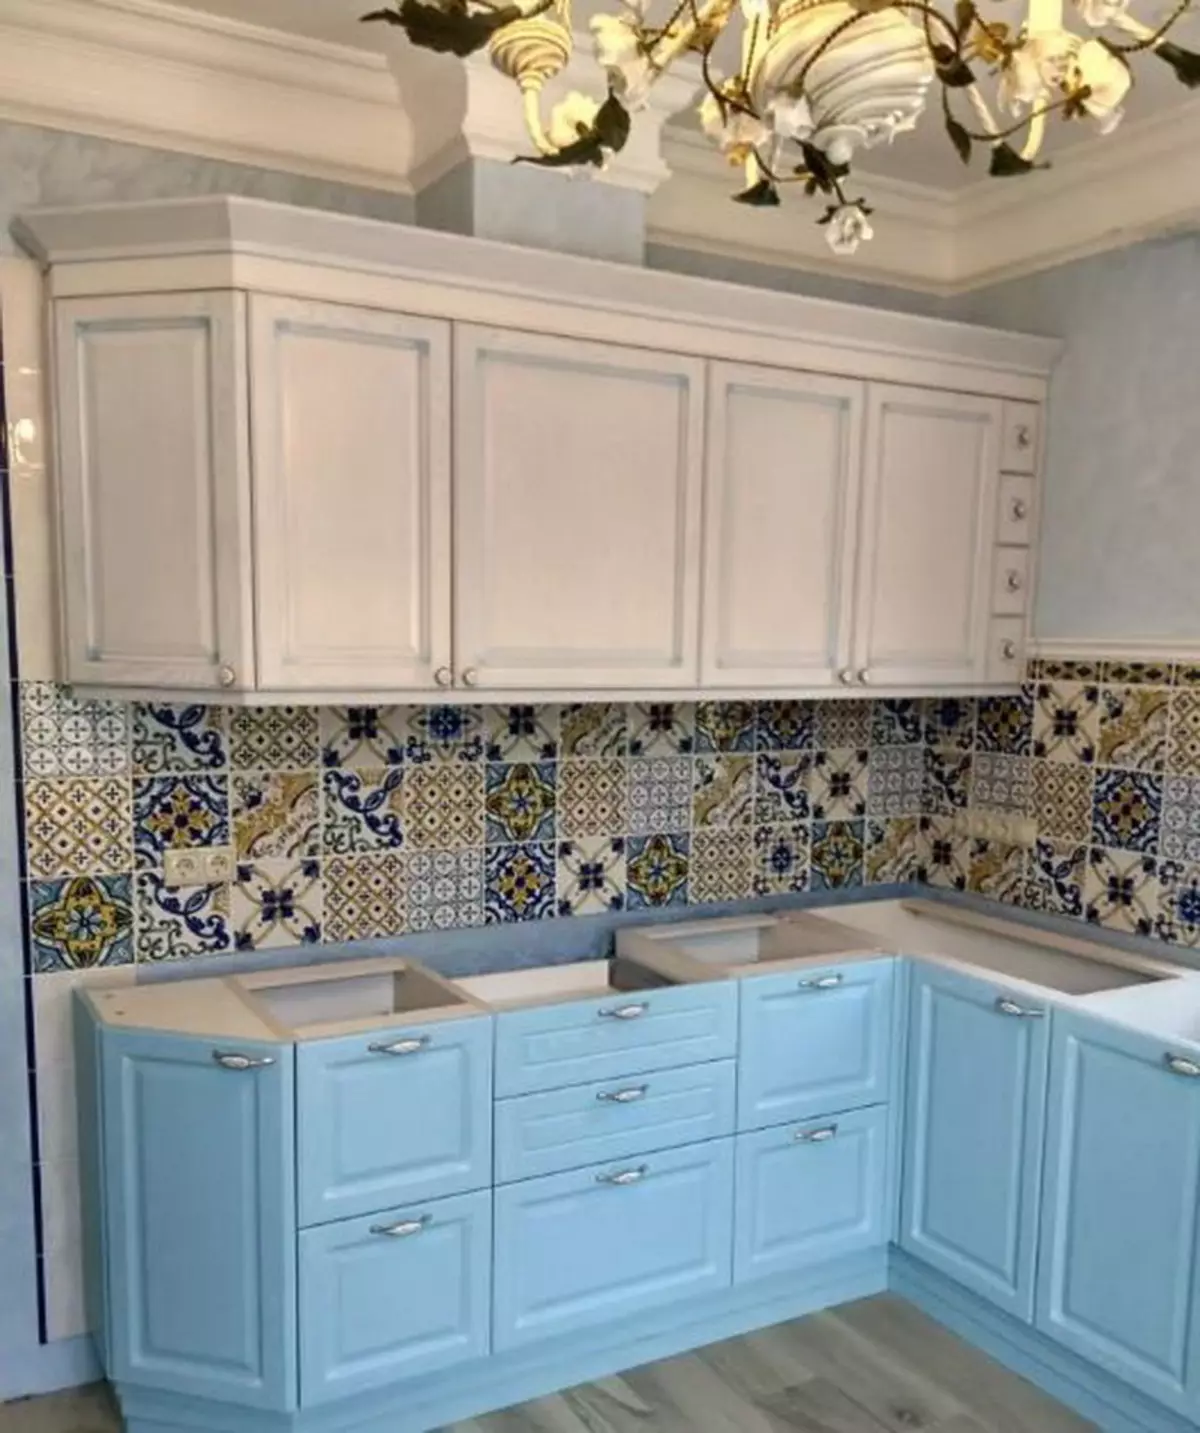 آشپزخانه آبی (82 عکس): چه رنگی در داخل یک آشپزخانه آبی ترکیب شده است؟ طراحی آشپزخانه در آبی رنگ آبی و آبی تیره 9555_55